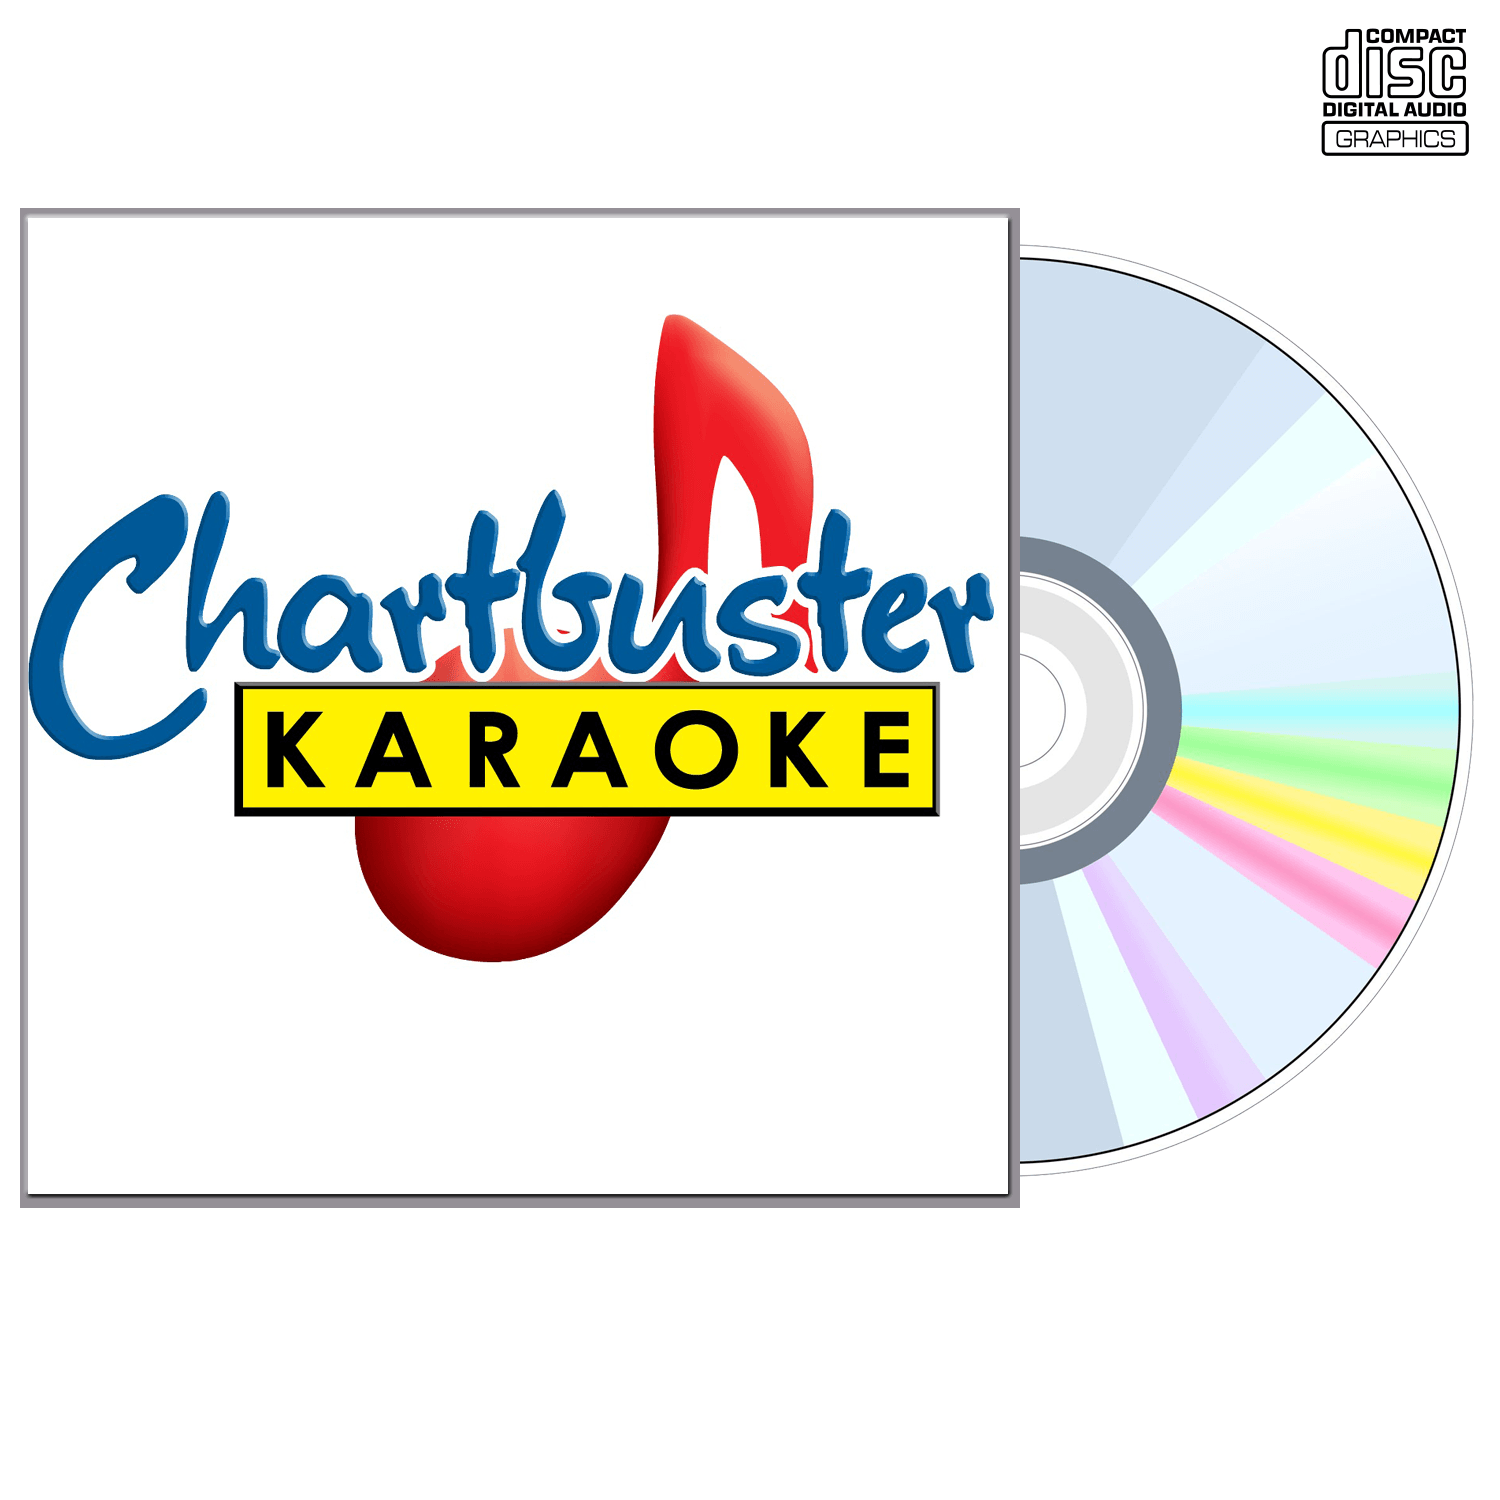 Rihanna Vol 1 - CD+G - Chartbuster Karaoke - Karaoke Home Entertainment